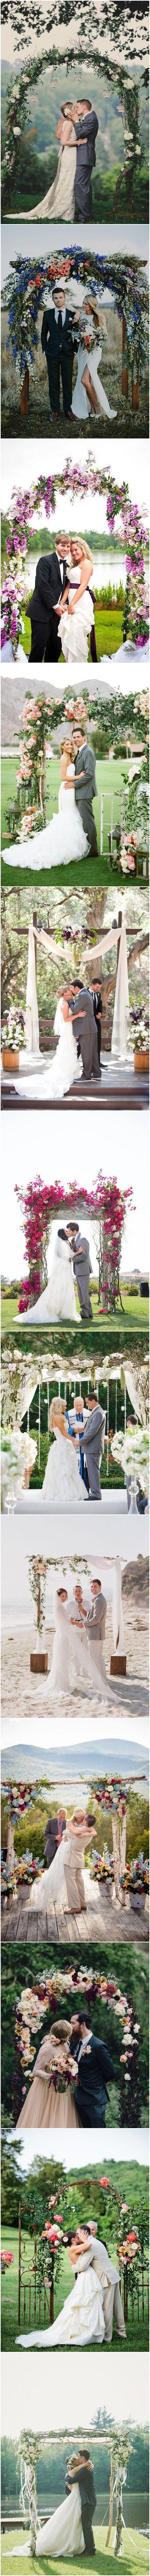 Hochzeit - 26 Floral Wedding Arches Decorating Ideas